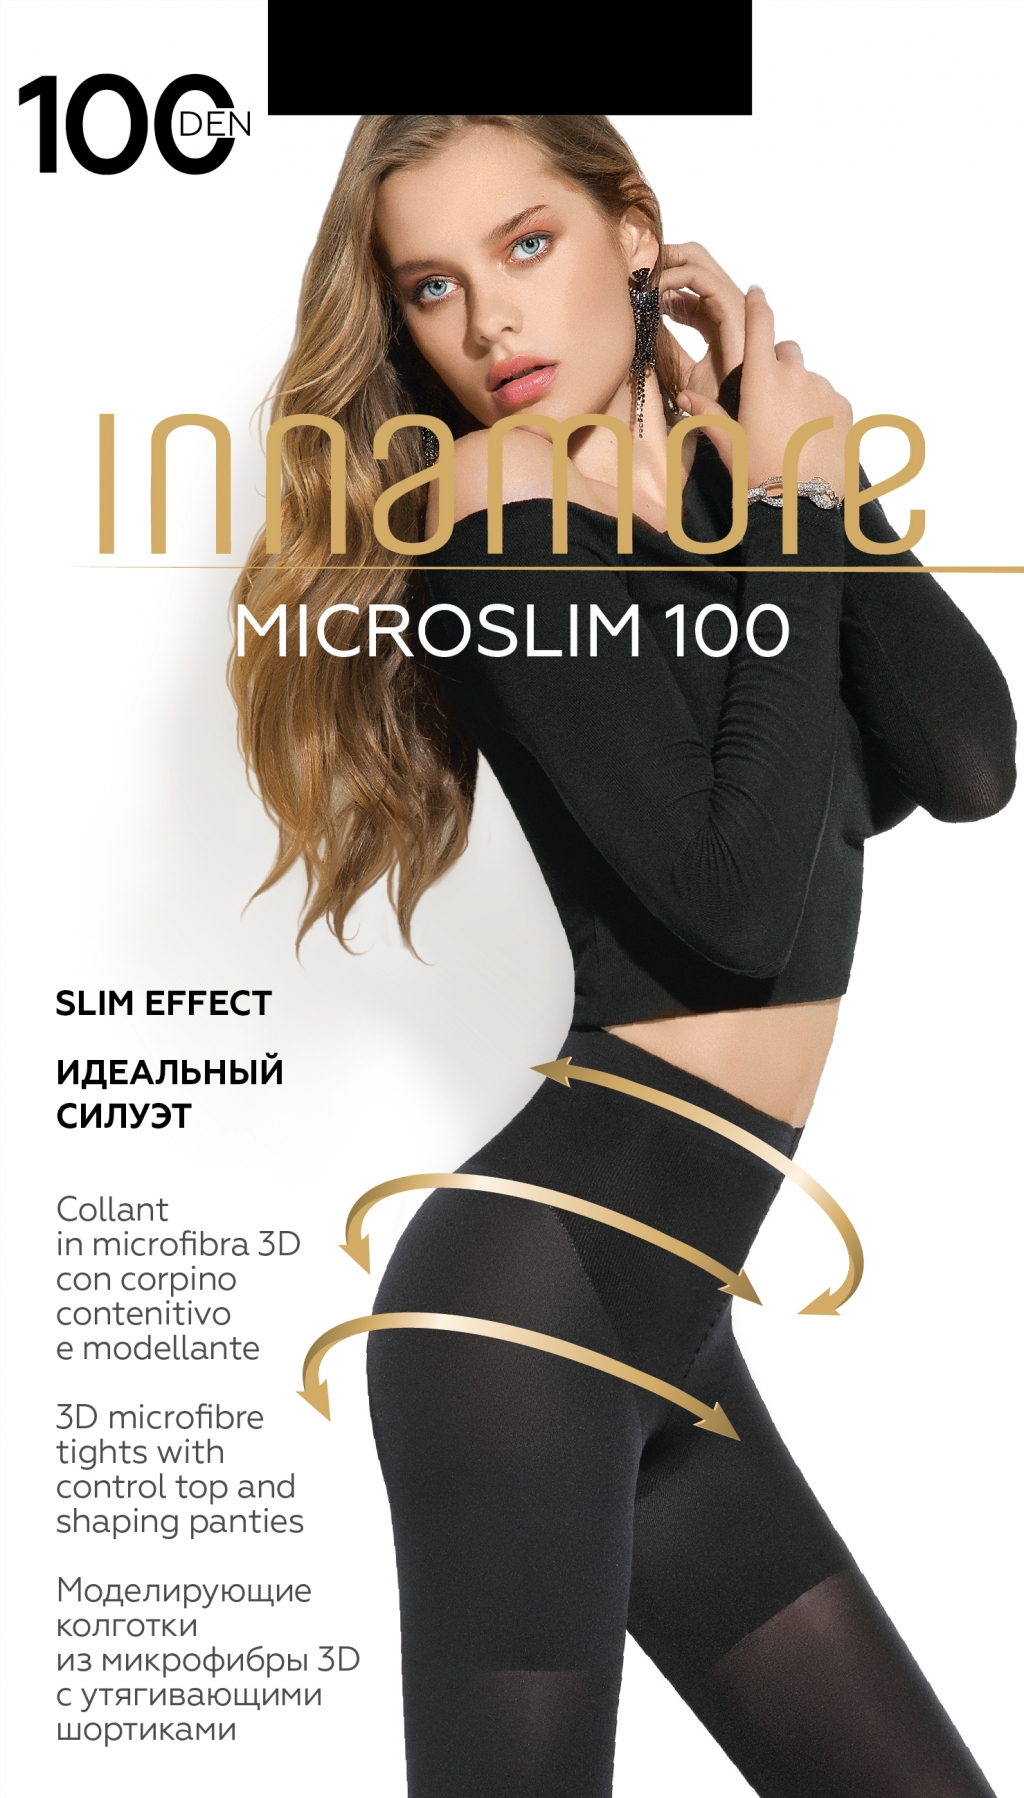 Колготки Innamore Microslim 100 купить недорого в интернет-магазине Для  Подружек